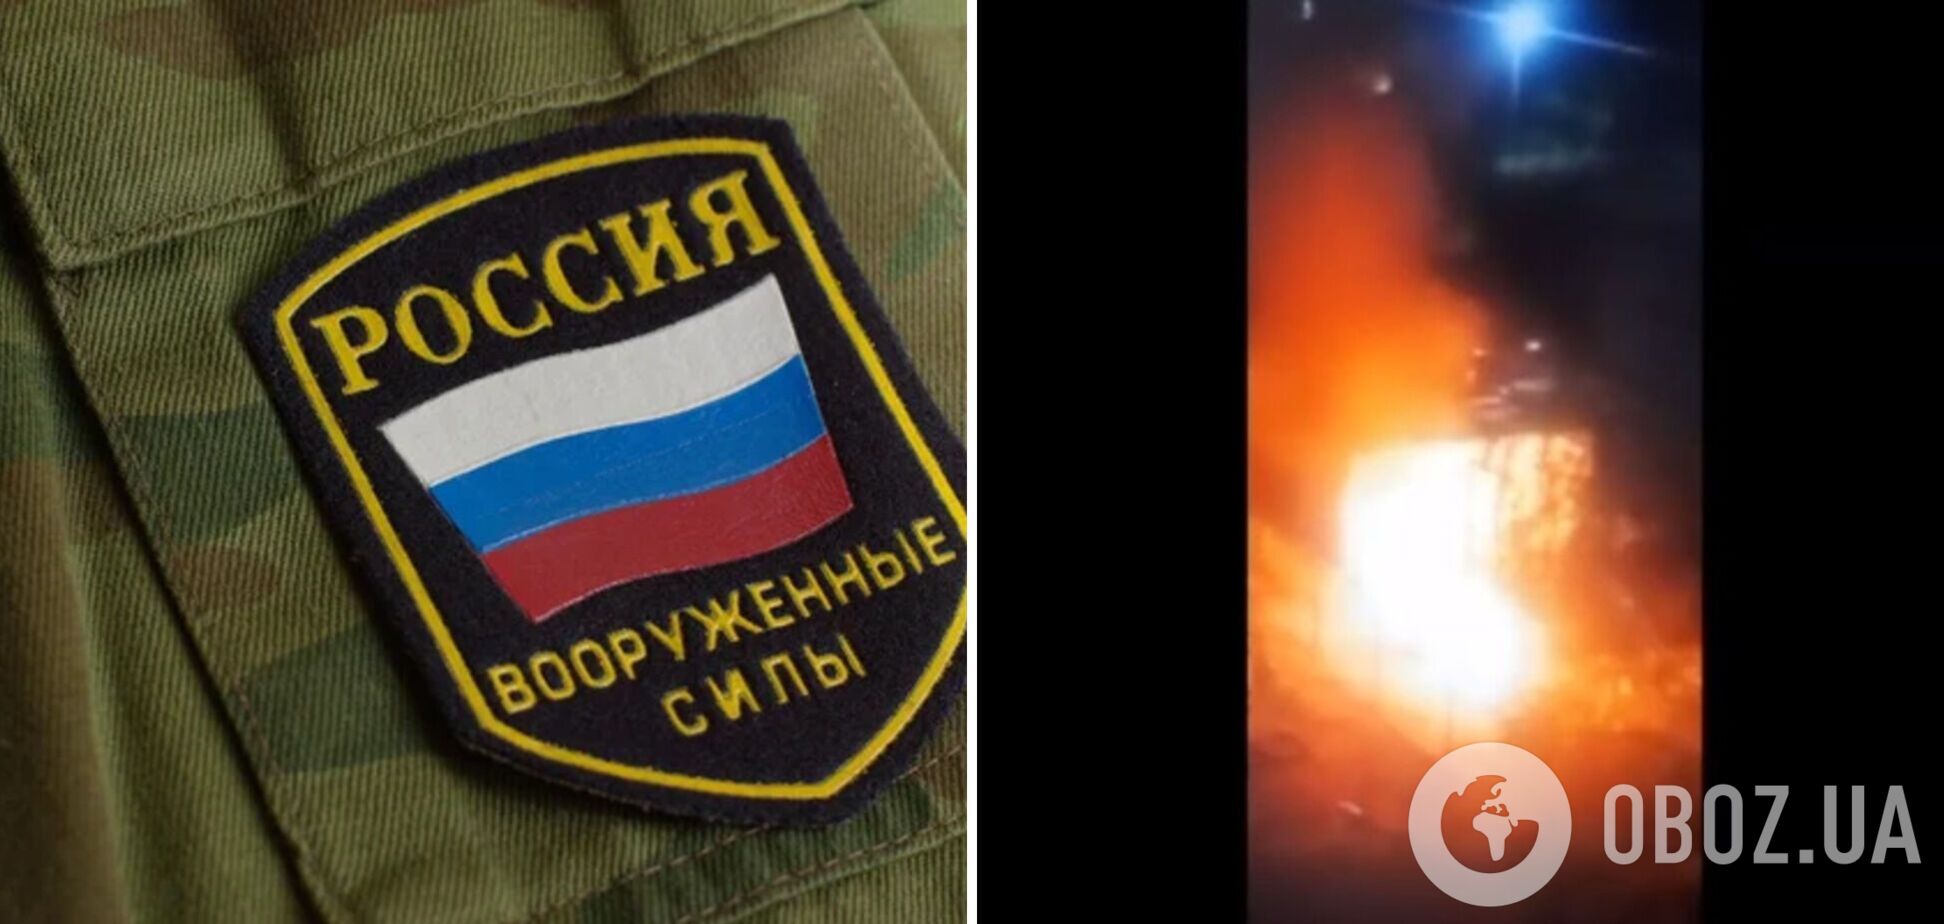 Партизаны в РФ сожгли авто российского офицера